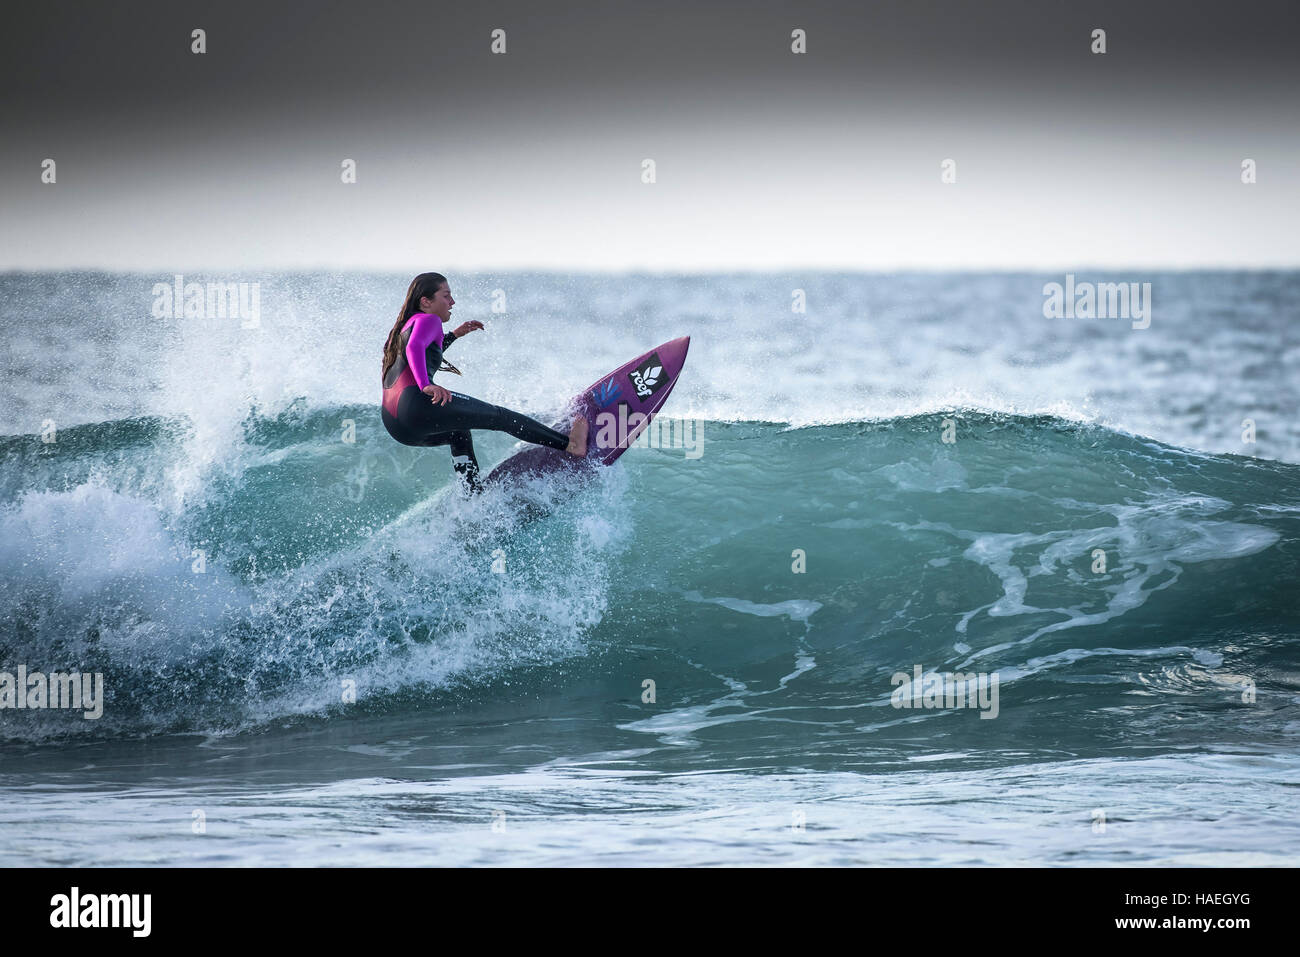 Eine weibliche Surfer reitet eine Welle an Fistral in Newquay, Cornwall. Großbritannien, England, UK. Stockfoto